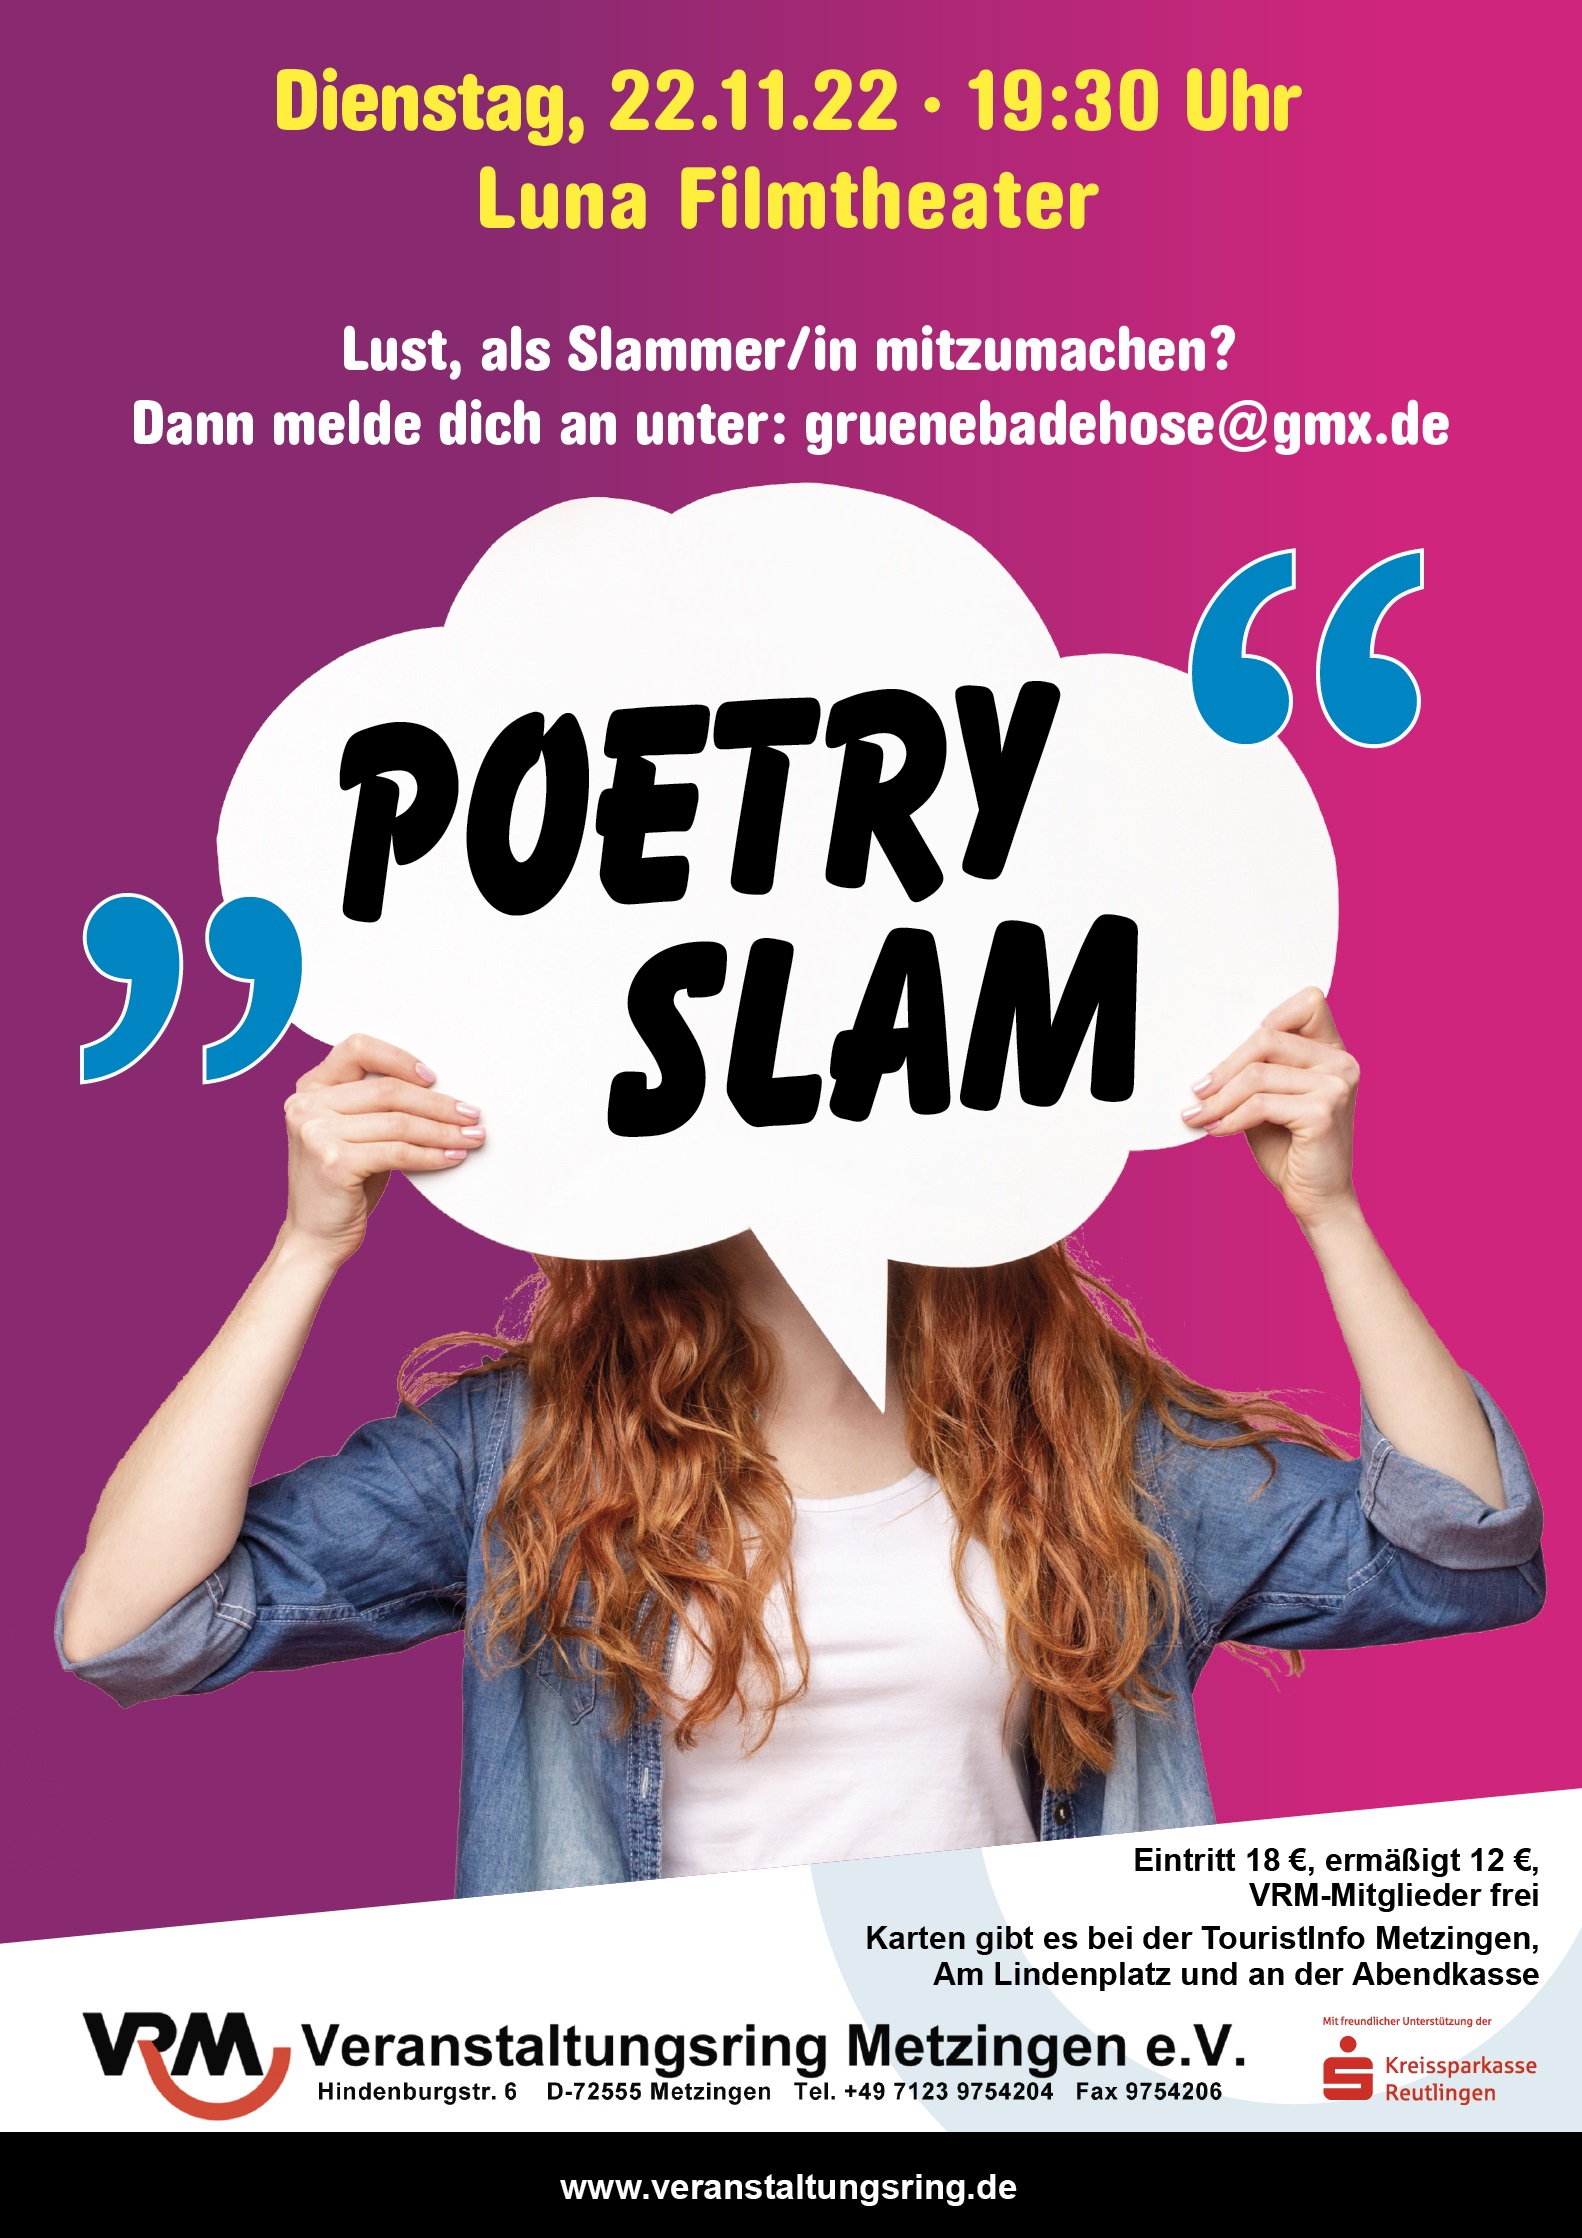 22.11.22 19:30 Uhr Luna Filmtheater – Poetry Slam des VRM